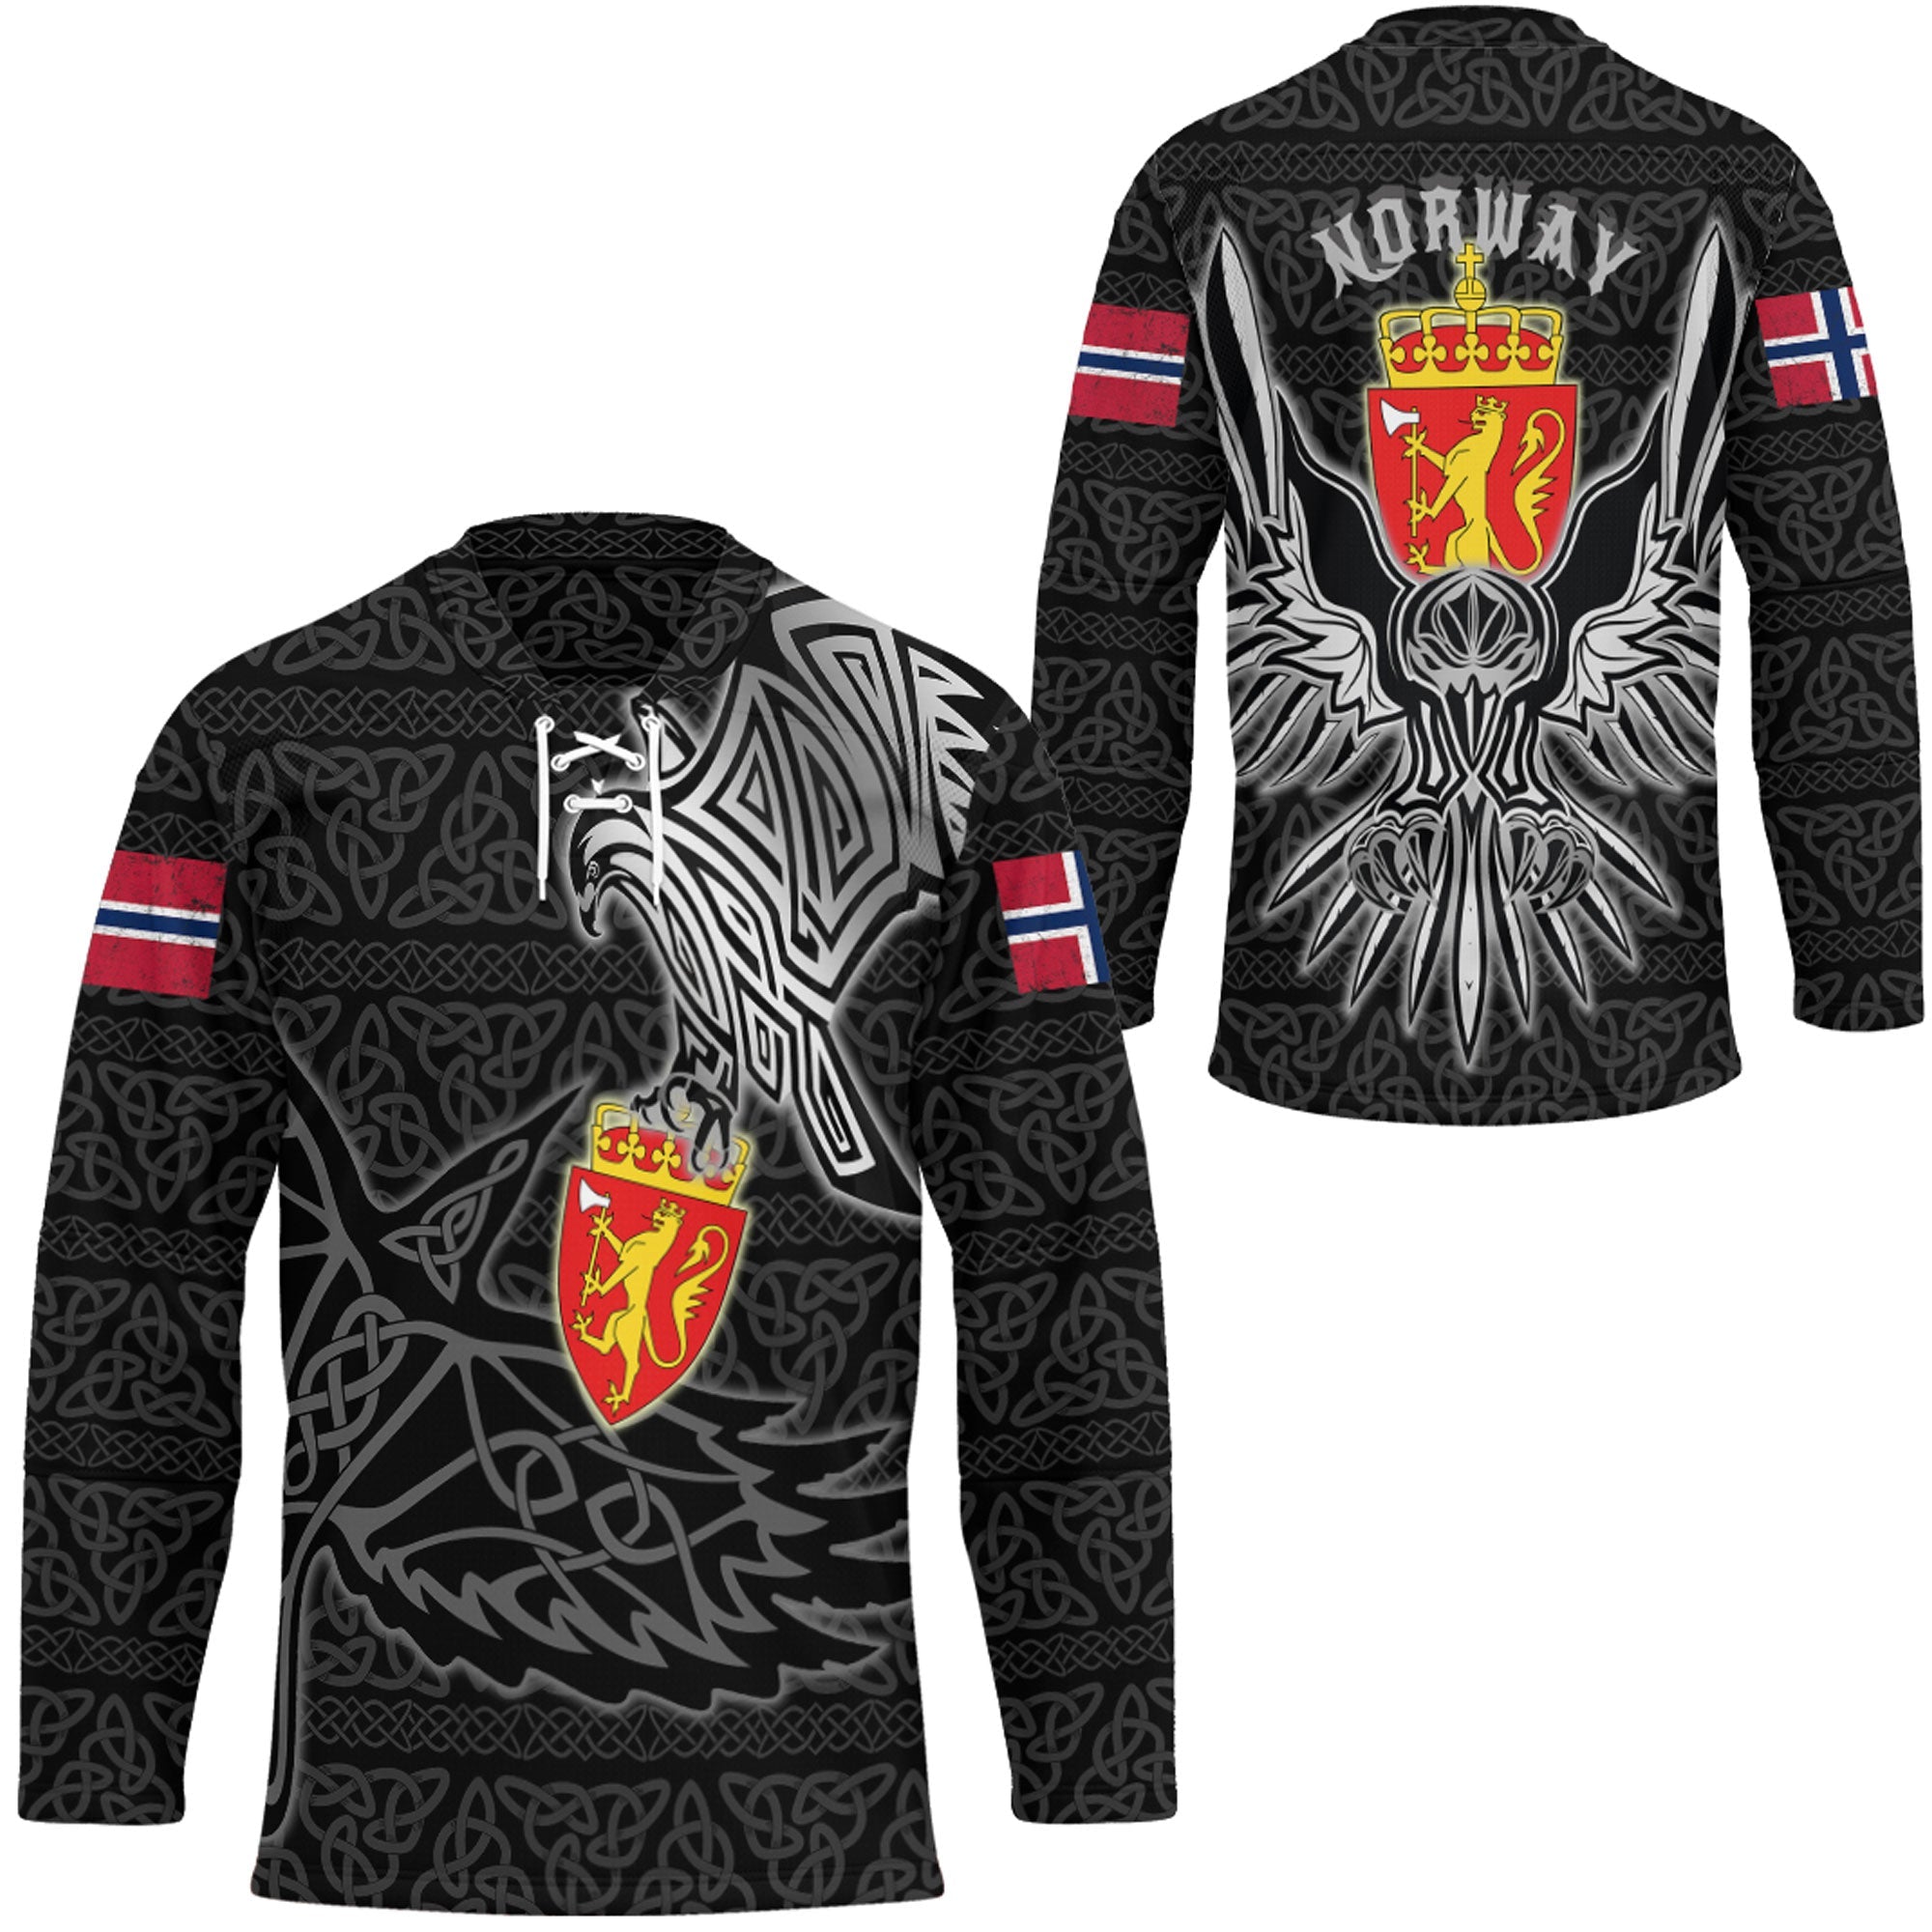 wonder-print-clothing-norway-raven-viking-hockey-jersey